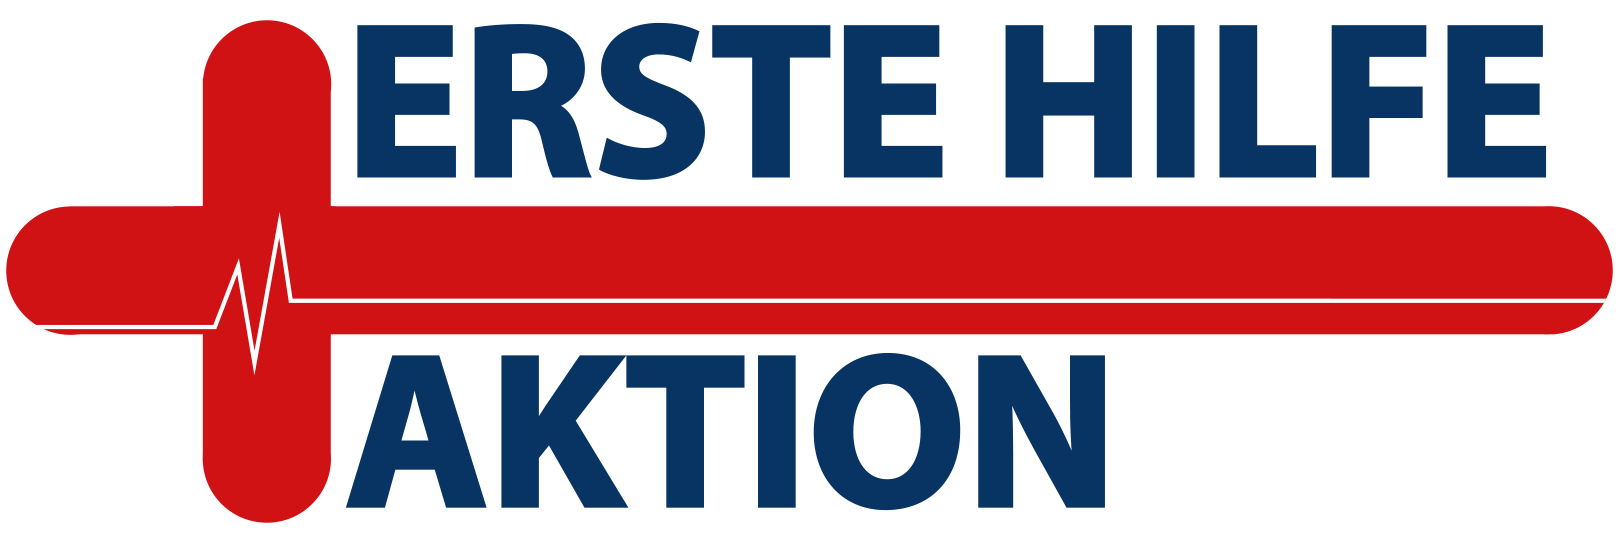 Erste_Hilfe_Aktion_Logo